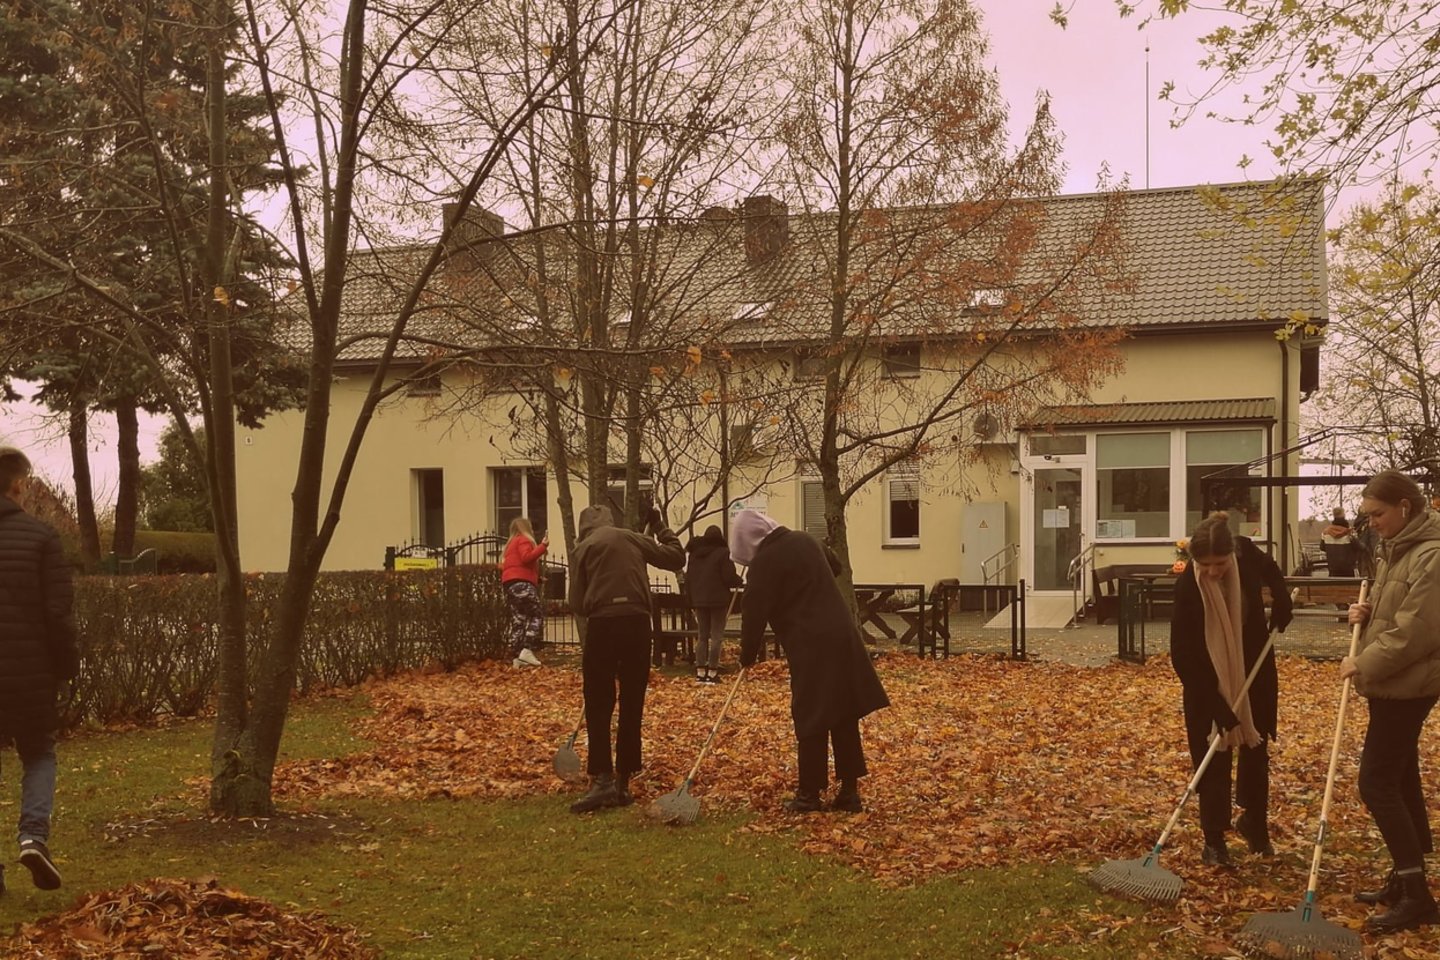  Kauno rajone jau aštuntus metus iš eilės vyksta gerumo akcija "Atverkime širdis". 